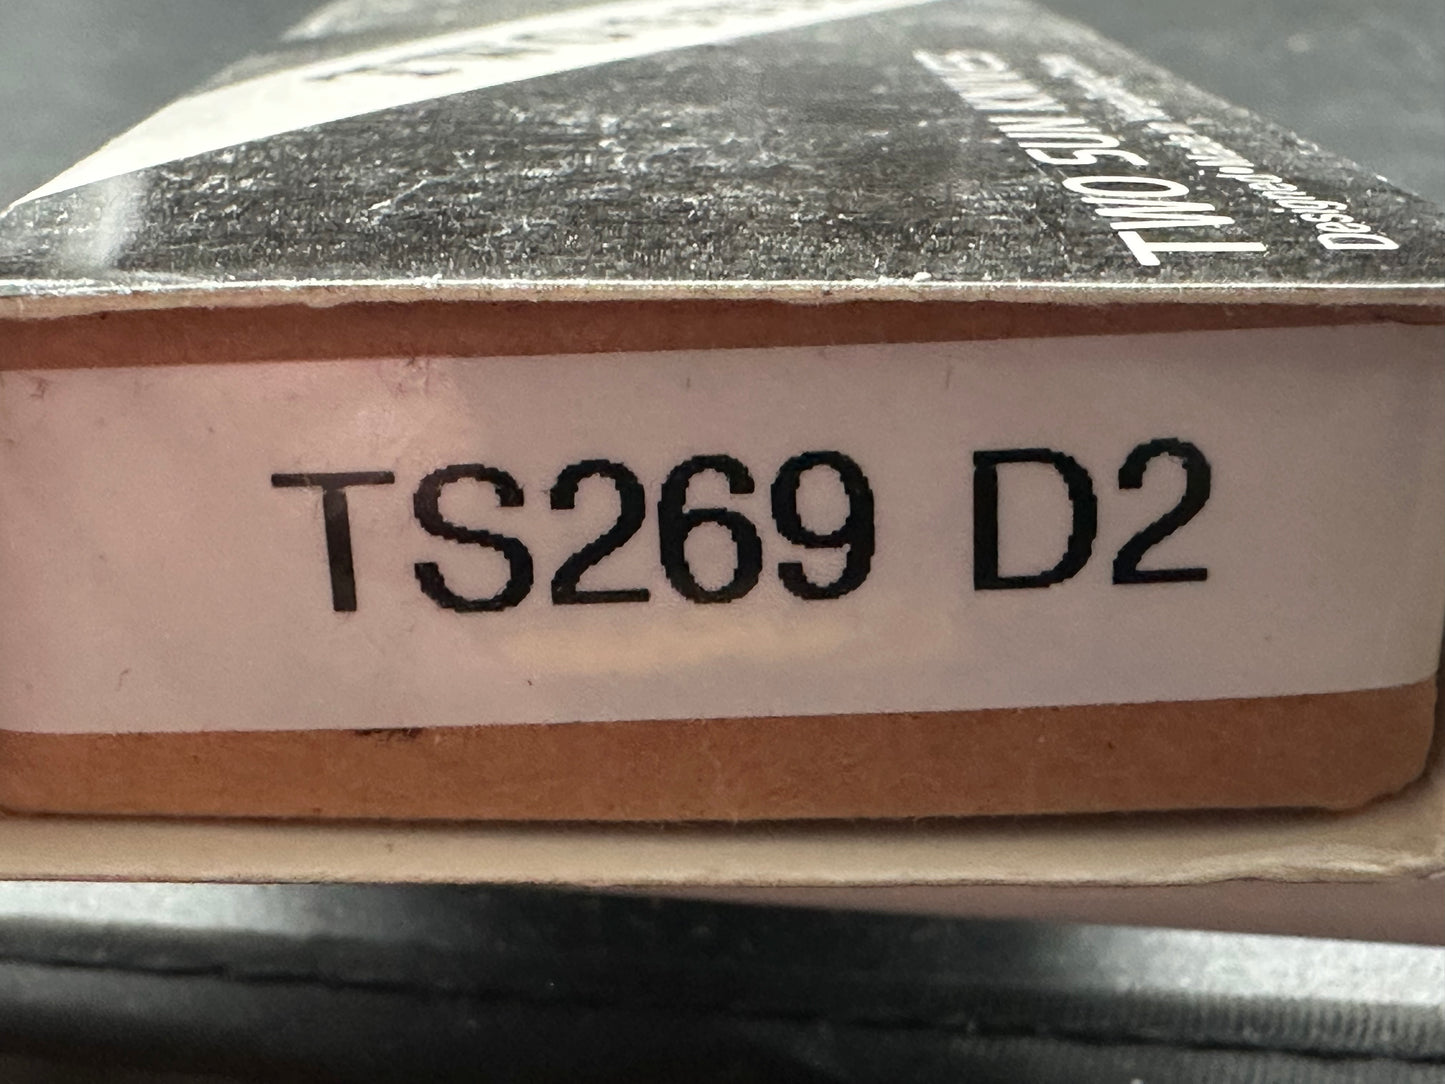 TWOSUN FOLDING KNIFE GRAY TITANIUM HANDLE D2 PLAIN EDGE TS269